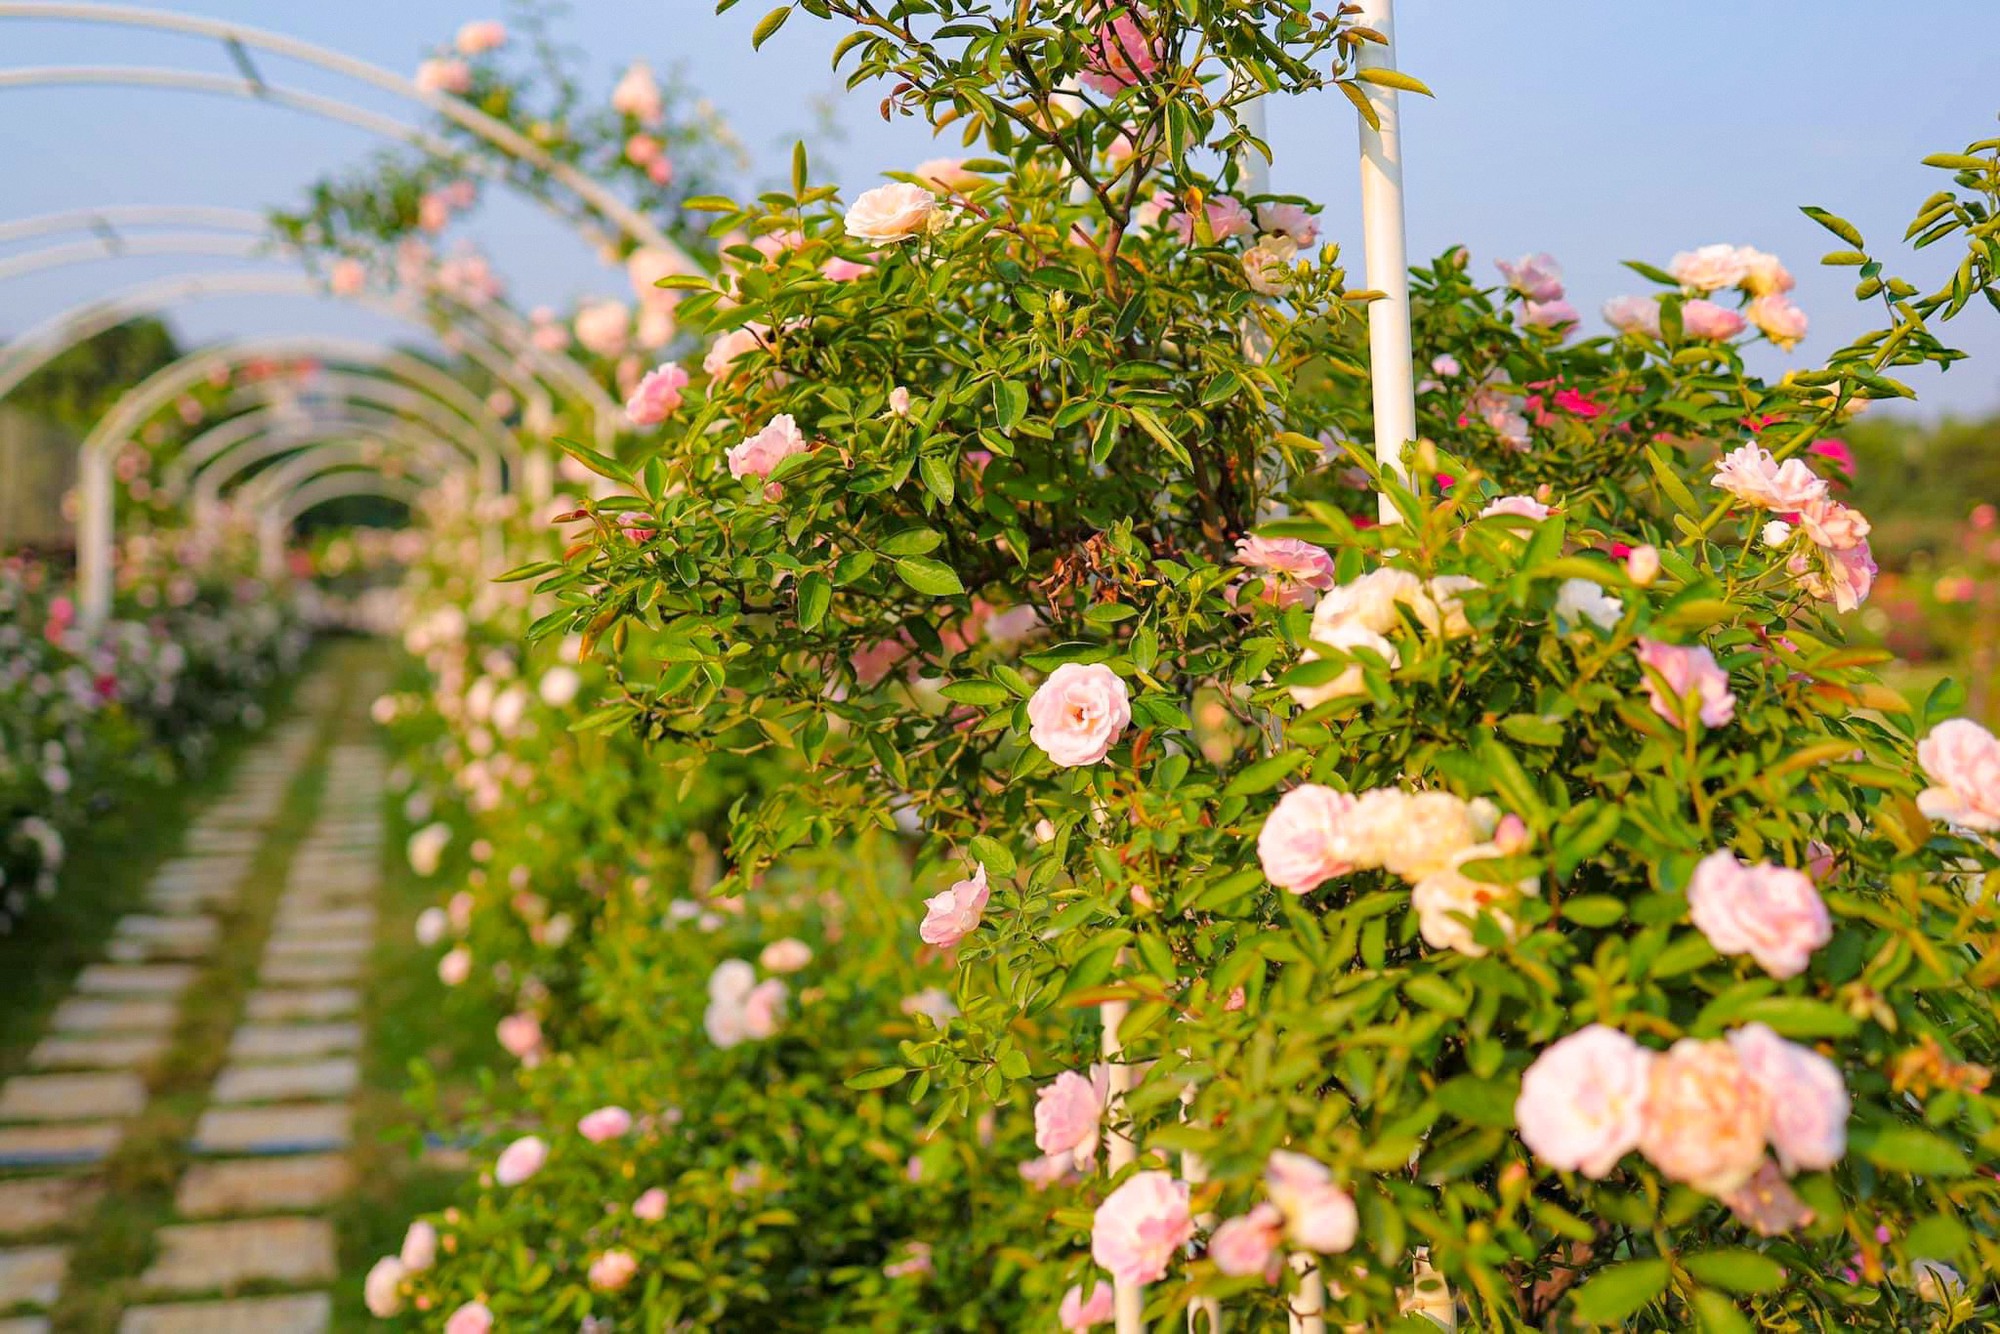 Khám phá vườn hoa hồng rộng 6.000m2 tại Hà Nội - Ảnh 3.